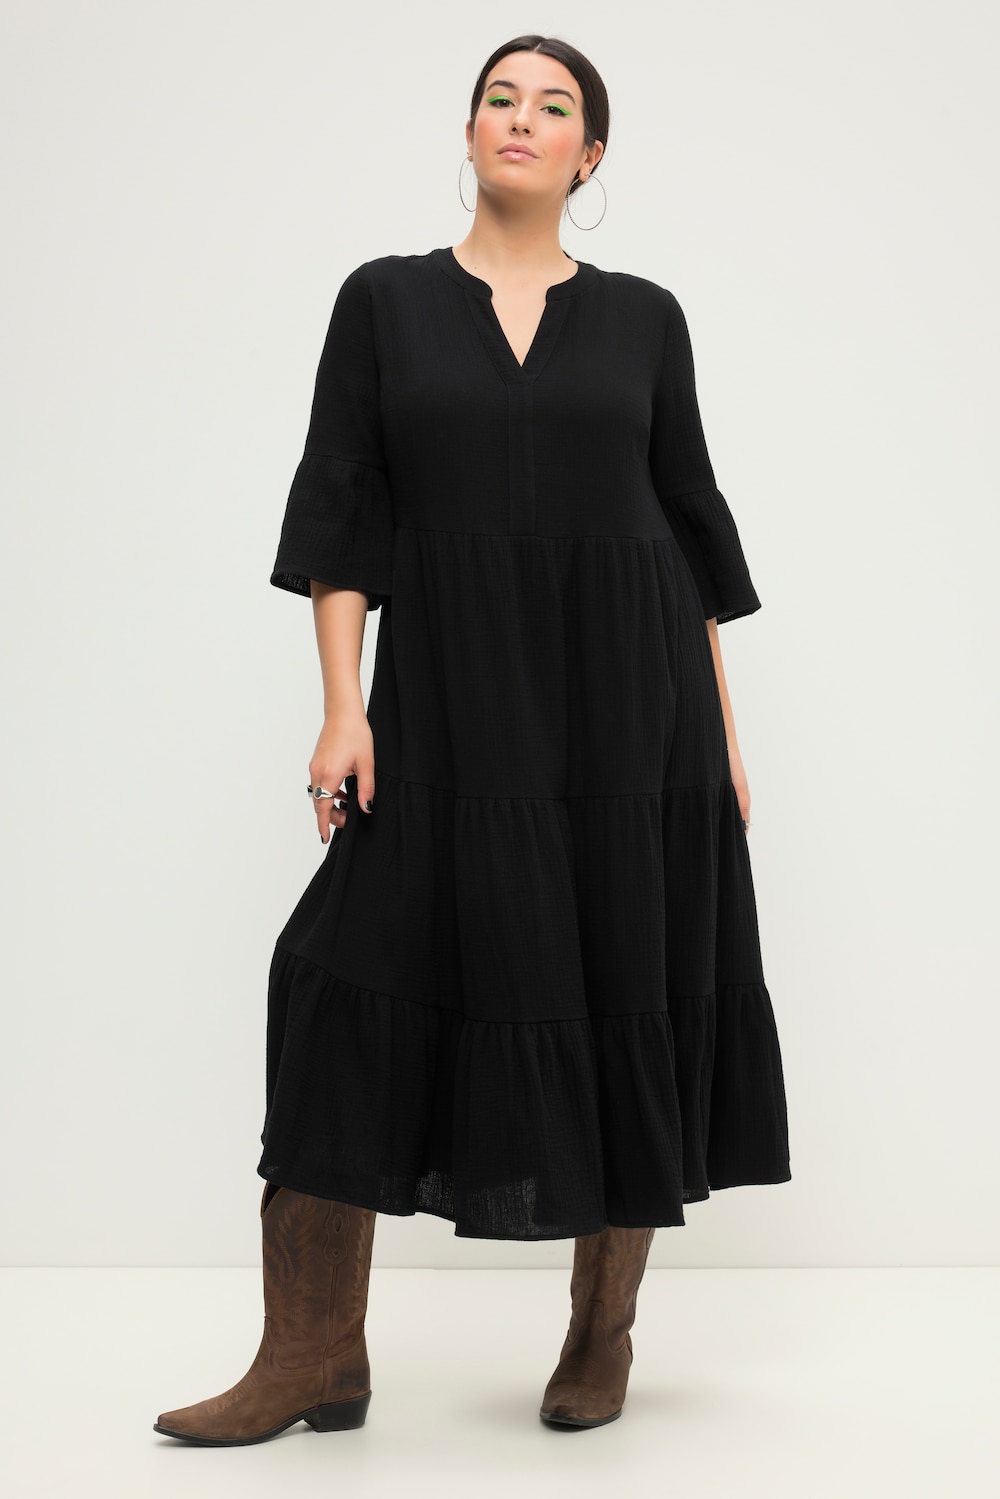 Grote Maten Maxi-jurk, Dames, zwart, Maat: 46/48, Katoen, Studio Untold